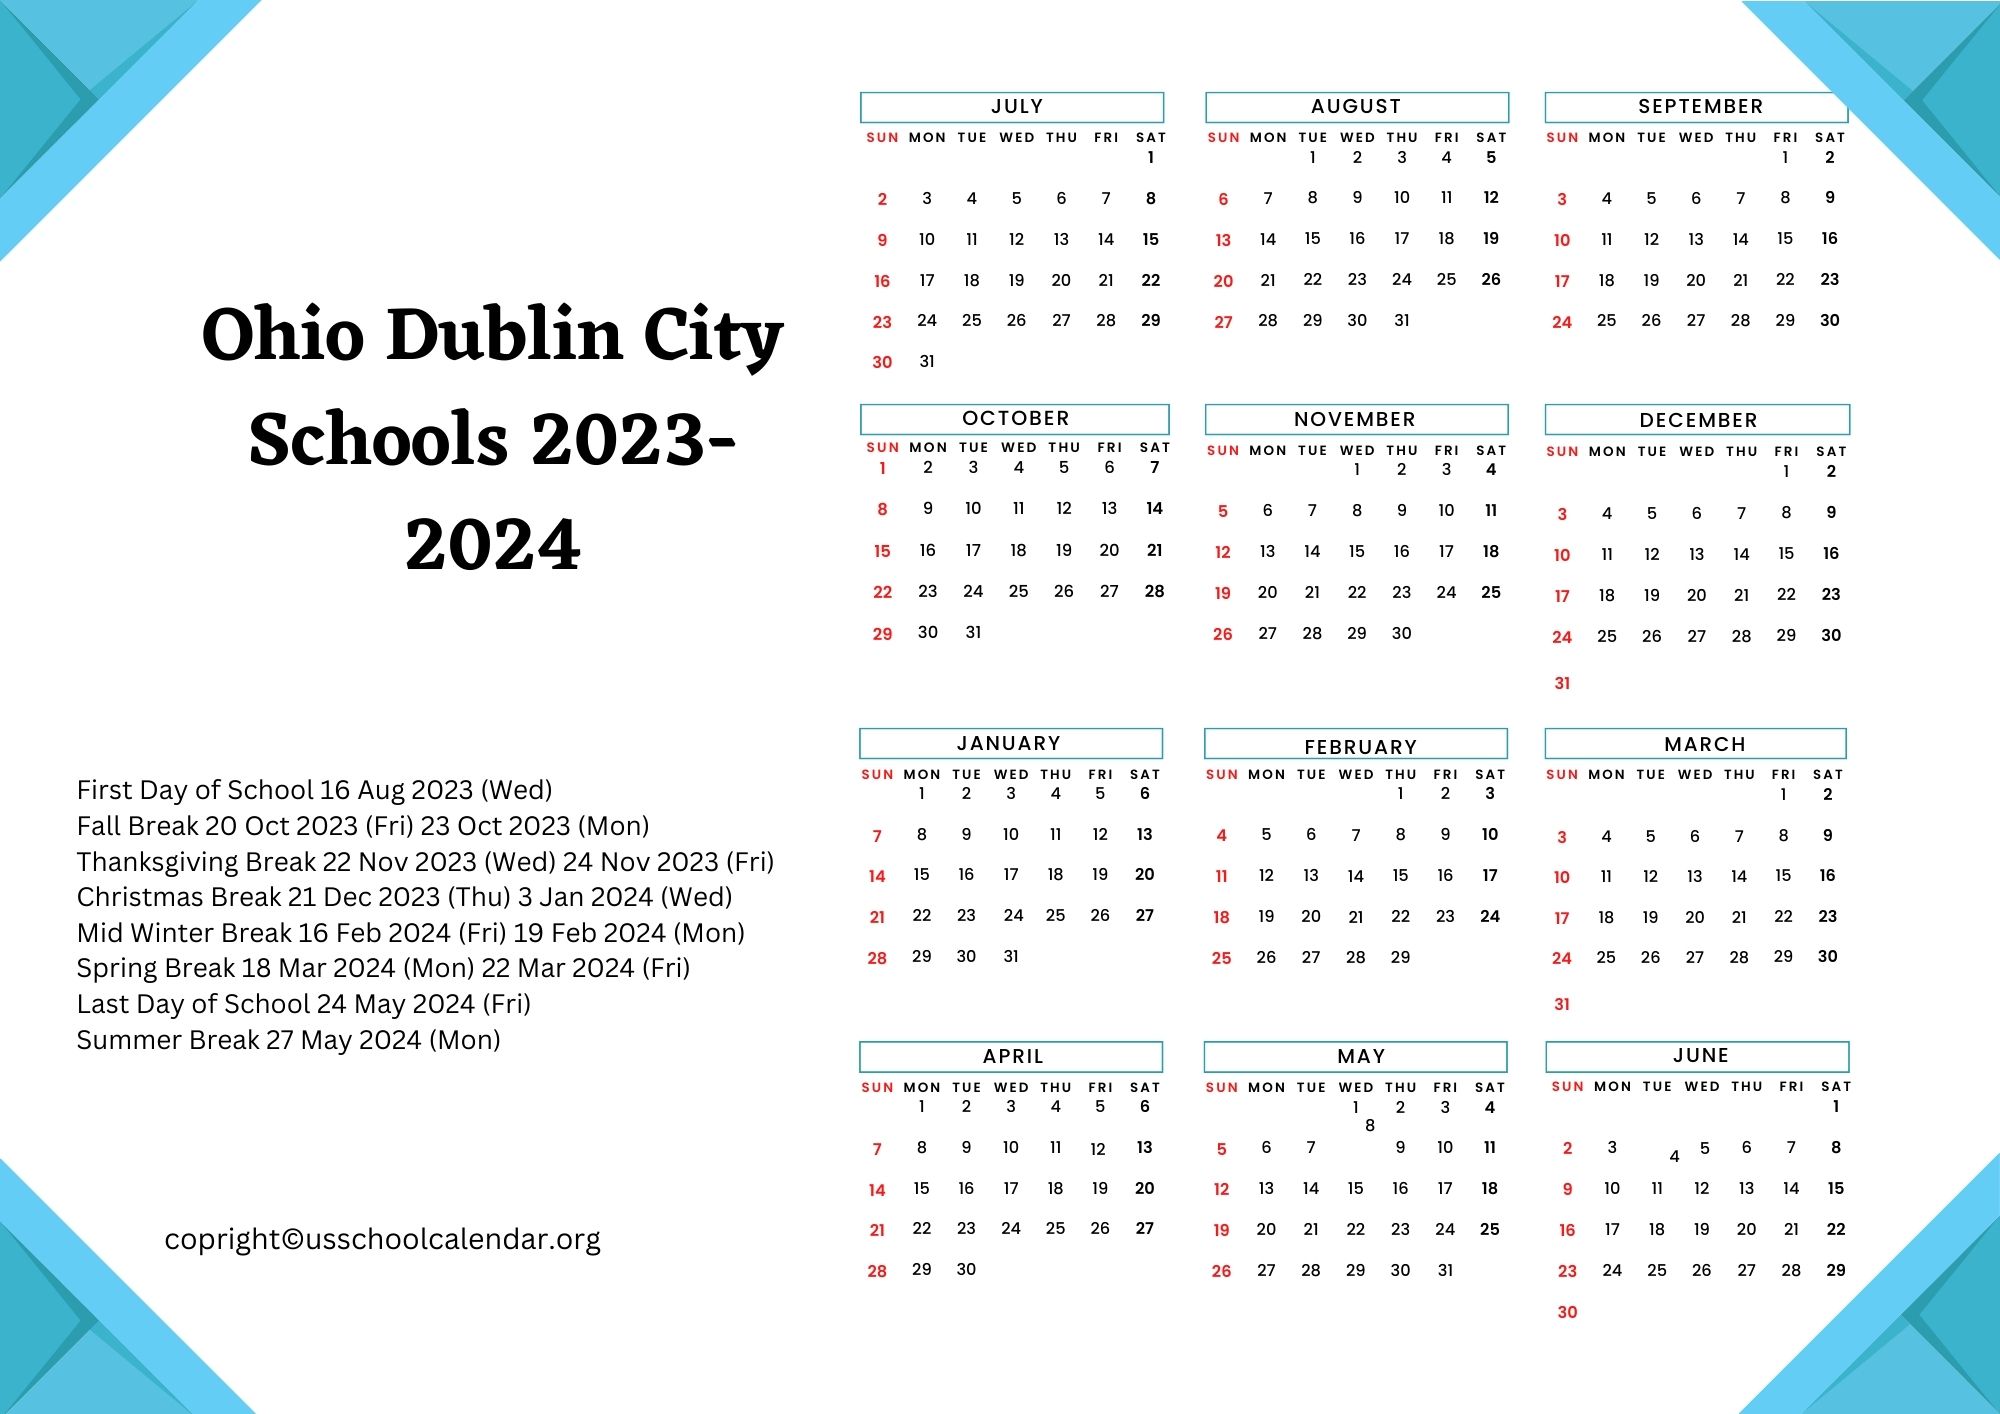 Ohio Dublin City Schools Calendar with Holidays 20232024